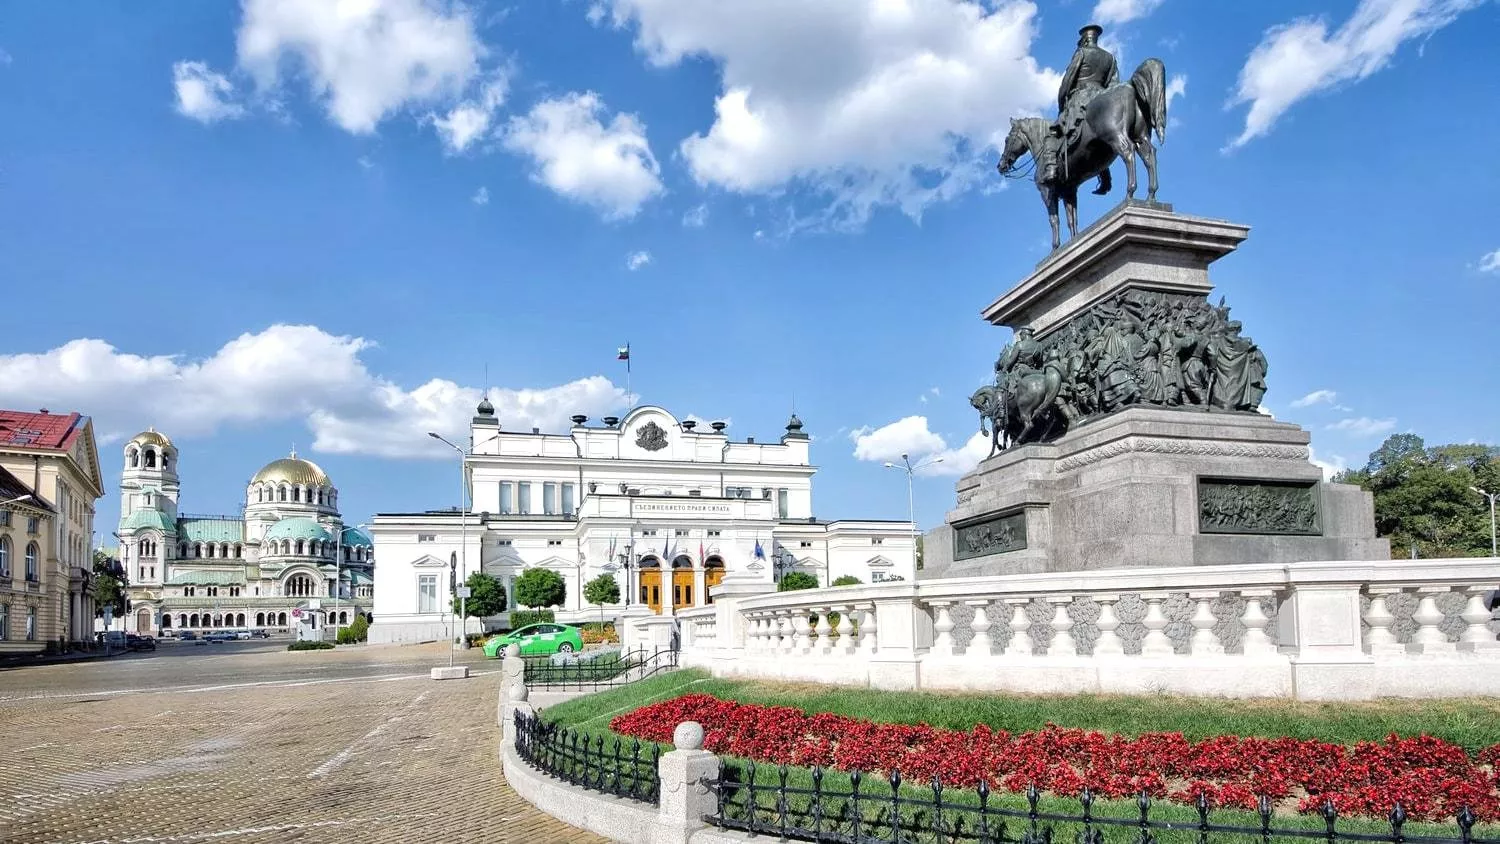 أشهر الأماكن السياحية في بلغاريا: أضيفيها إلى قائمة وجهاتكِ المقبلة